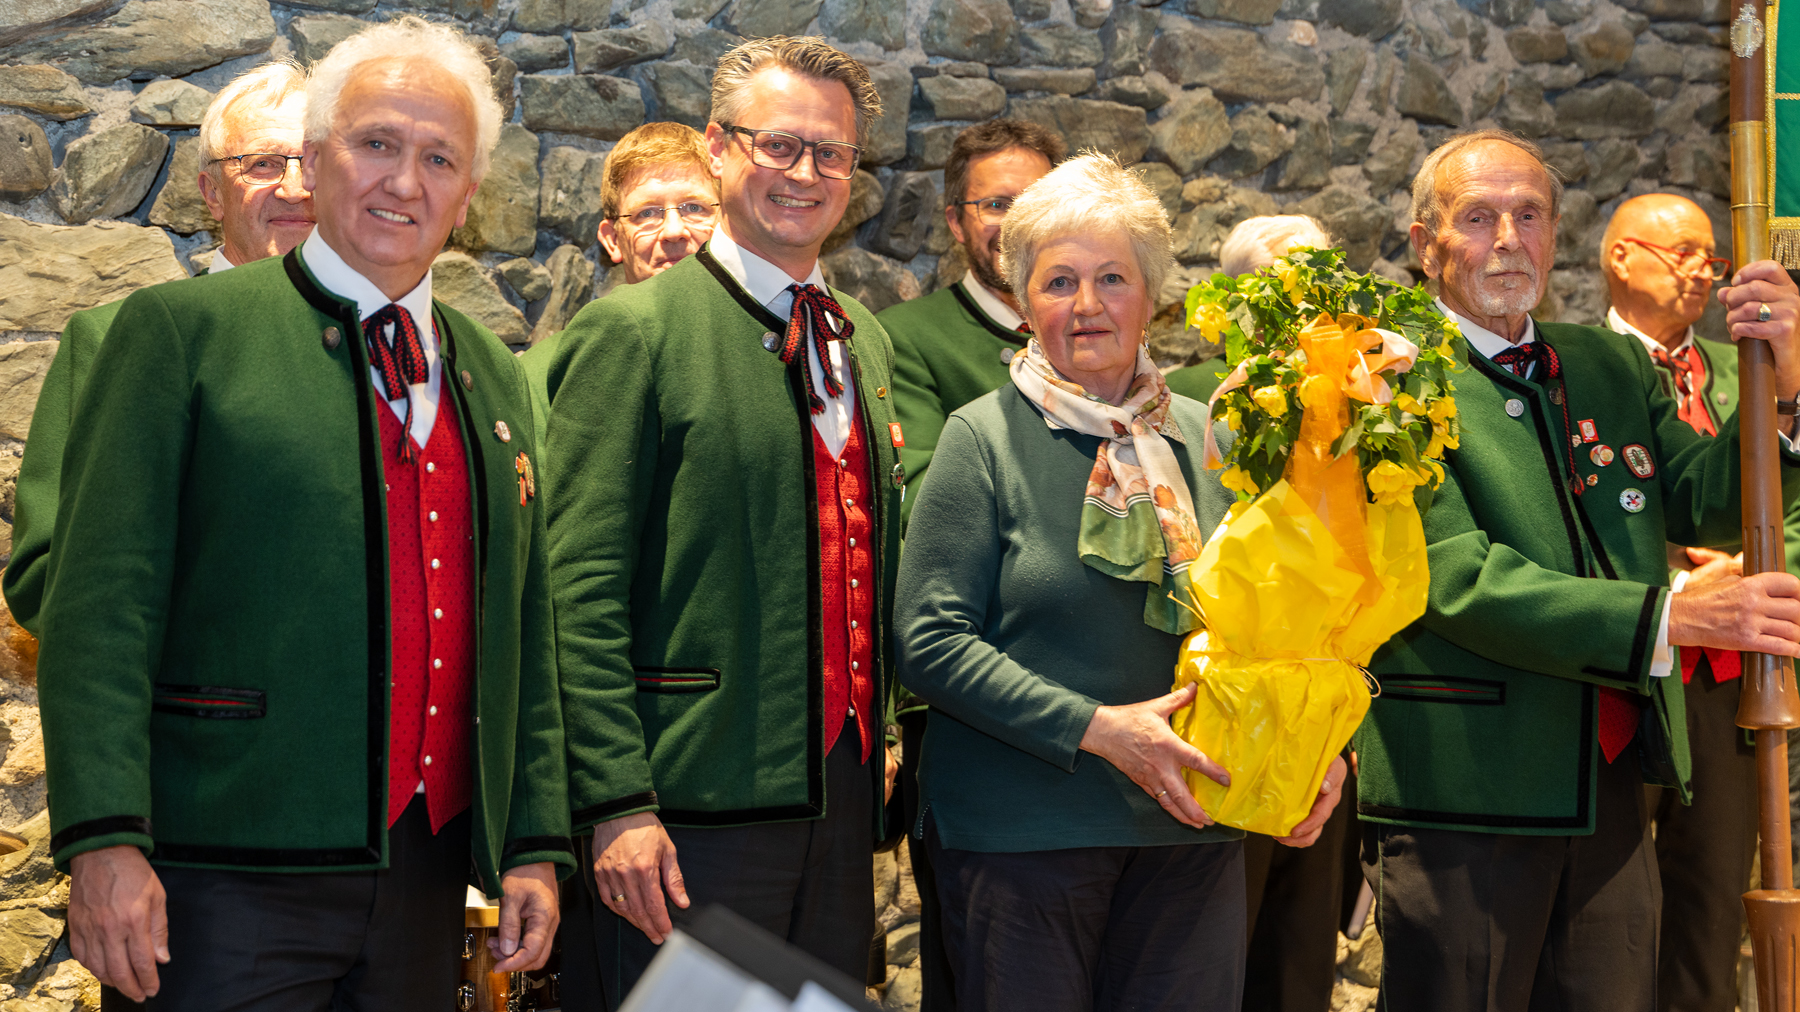 LT FK Foto mit Vorstand und Restauratorin mit Blumenstrauß